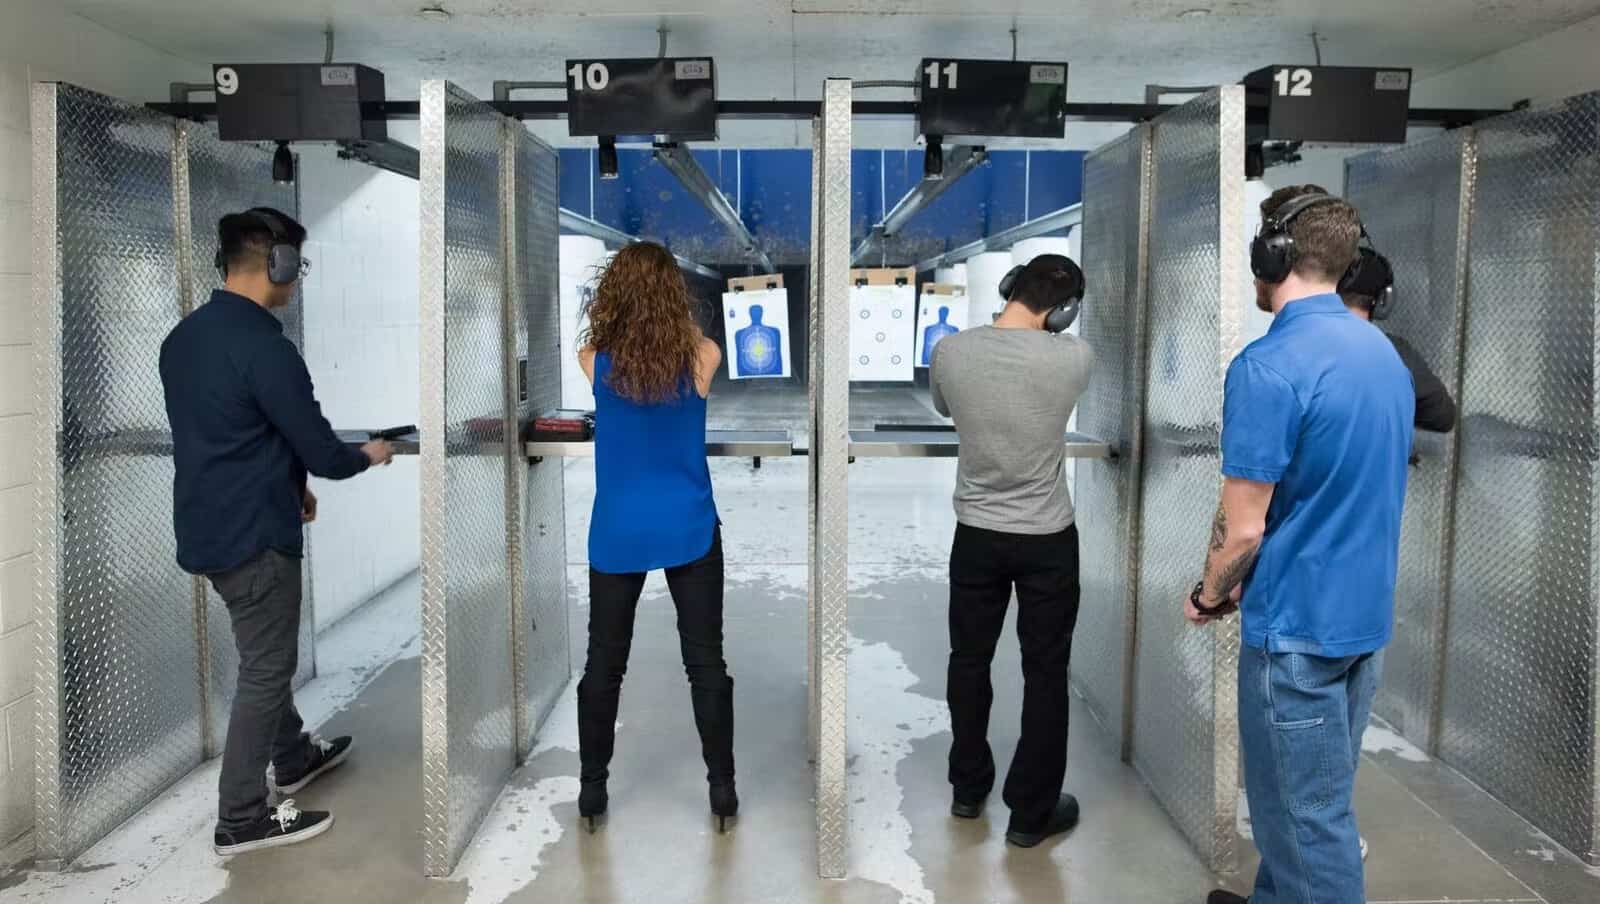 two people shooting guns at the range 702 in Las Vegas